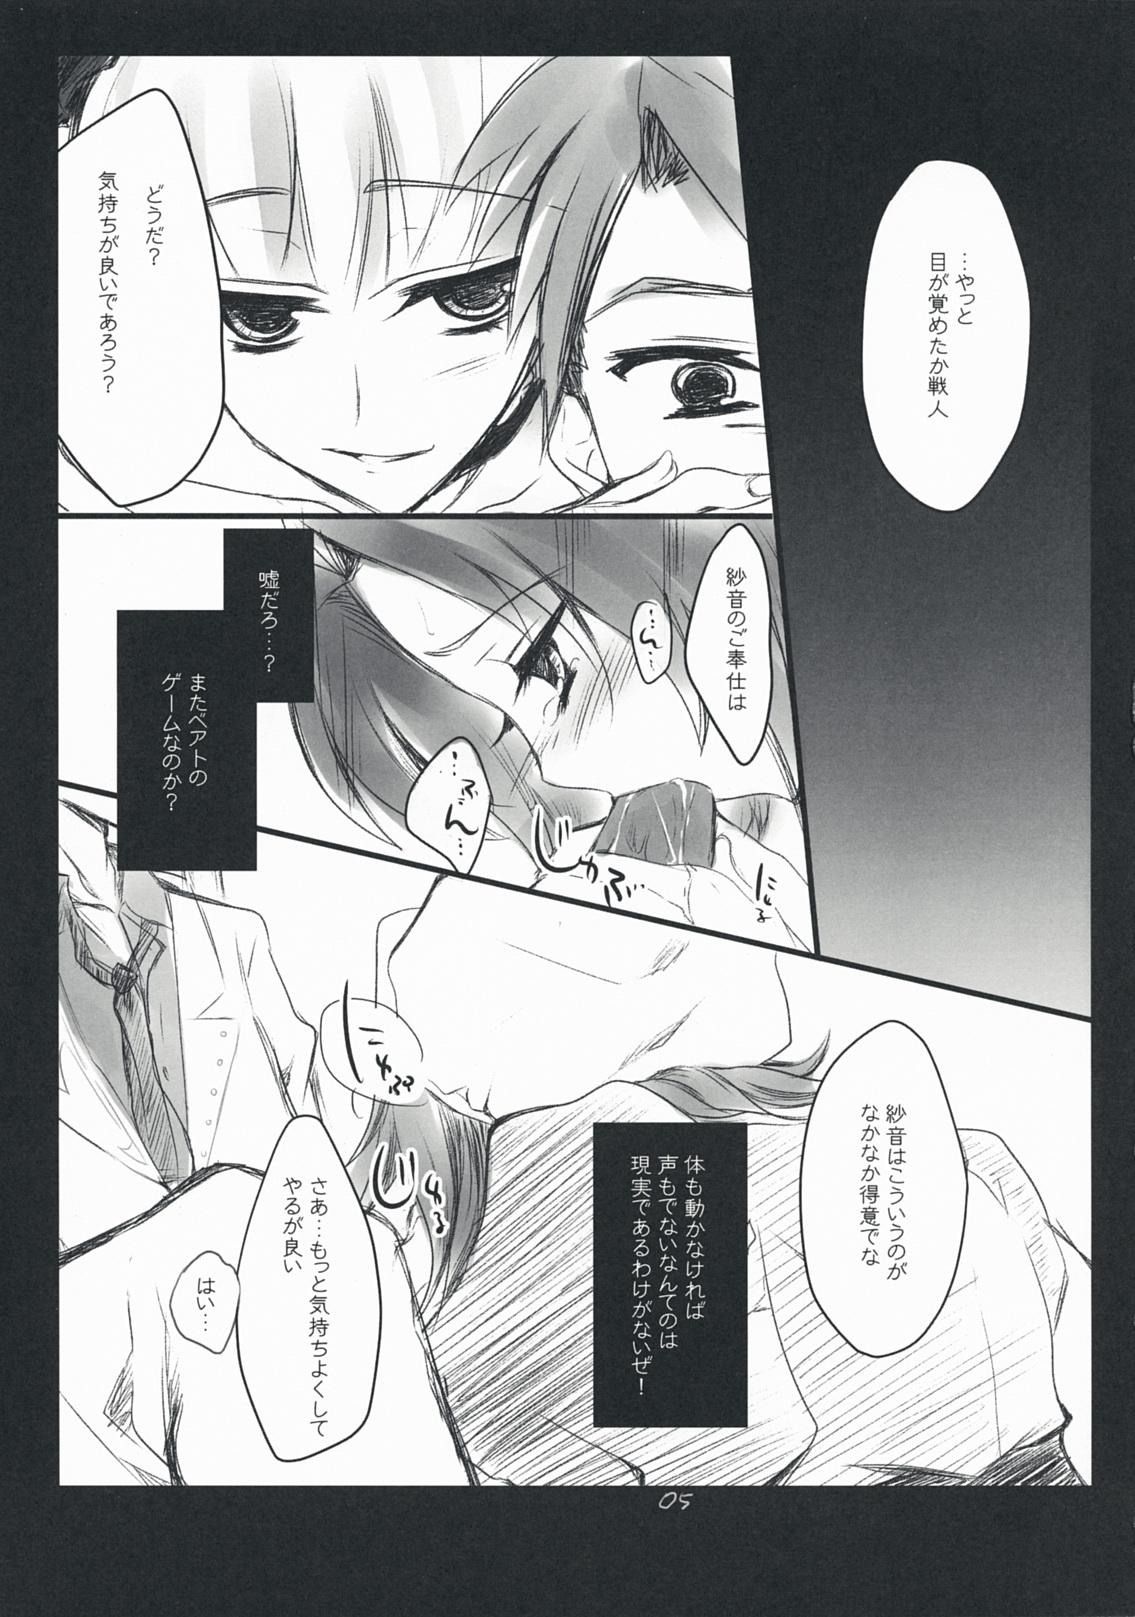 Leche The Queen Of Nightmare - Umineko no naku koro ni Backshots - Page 5